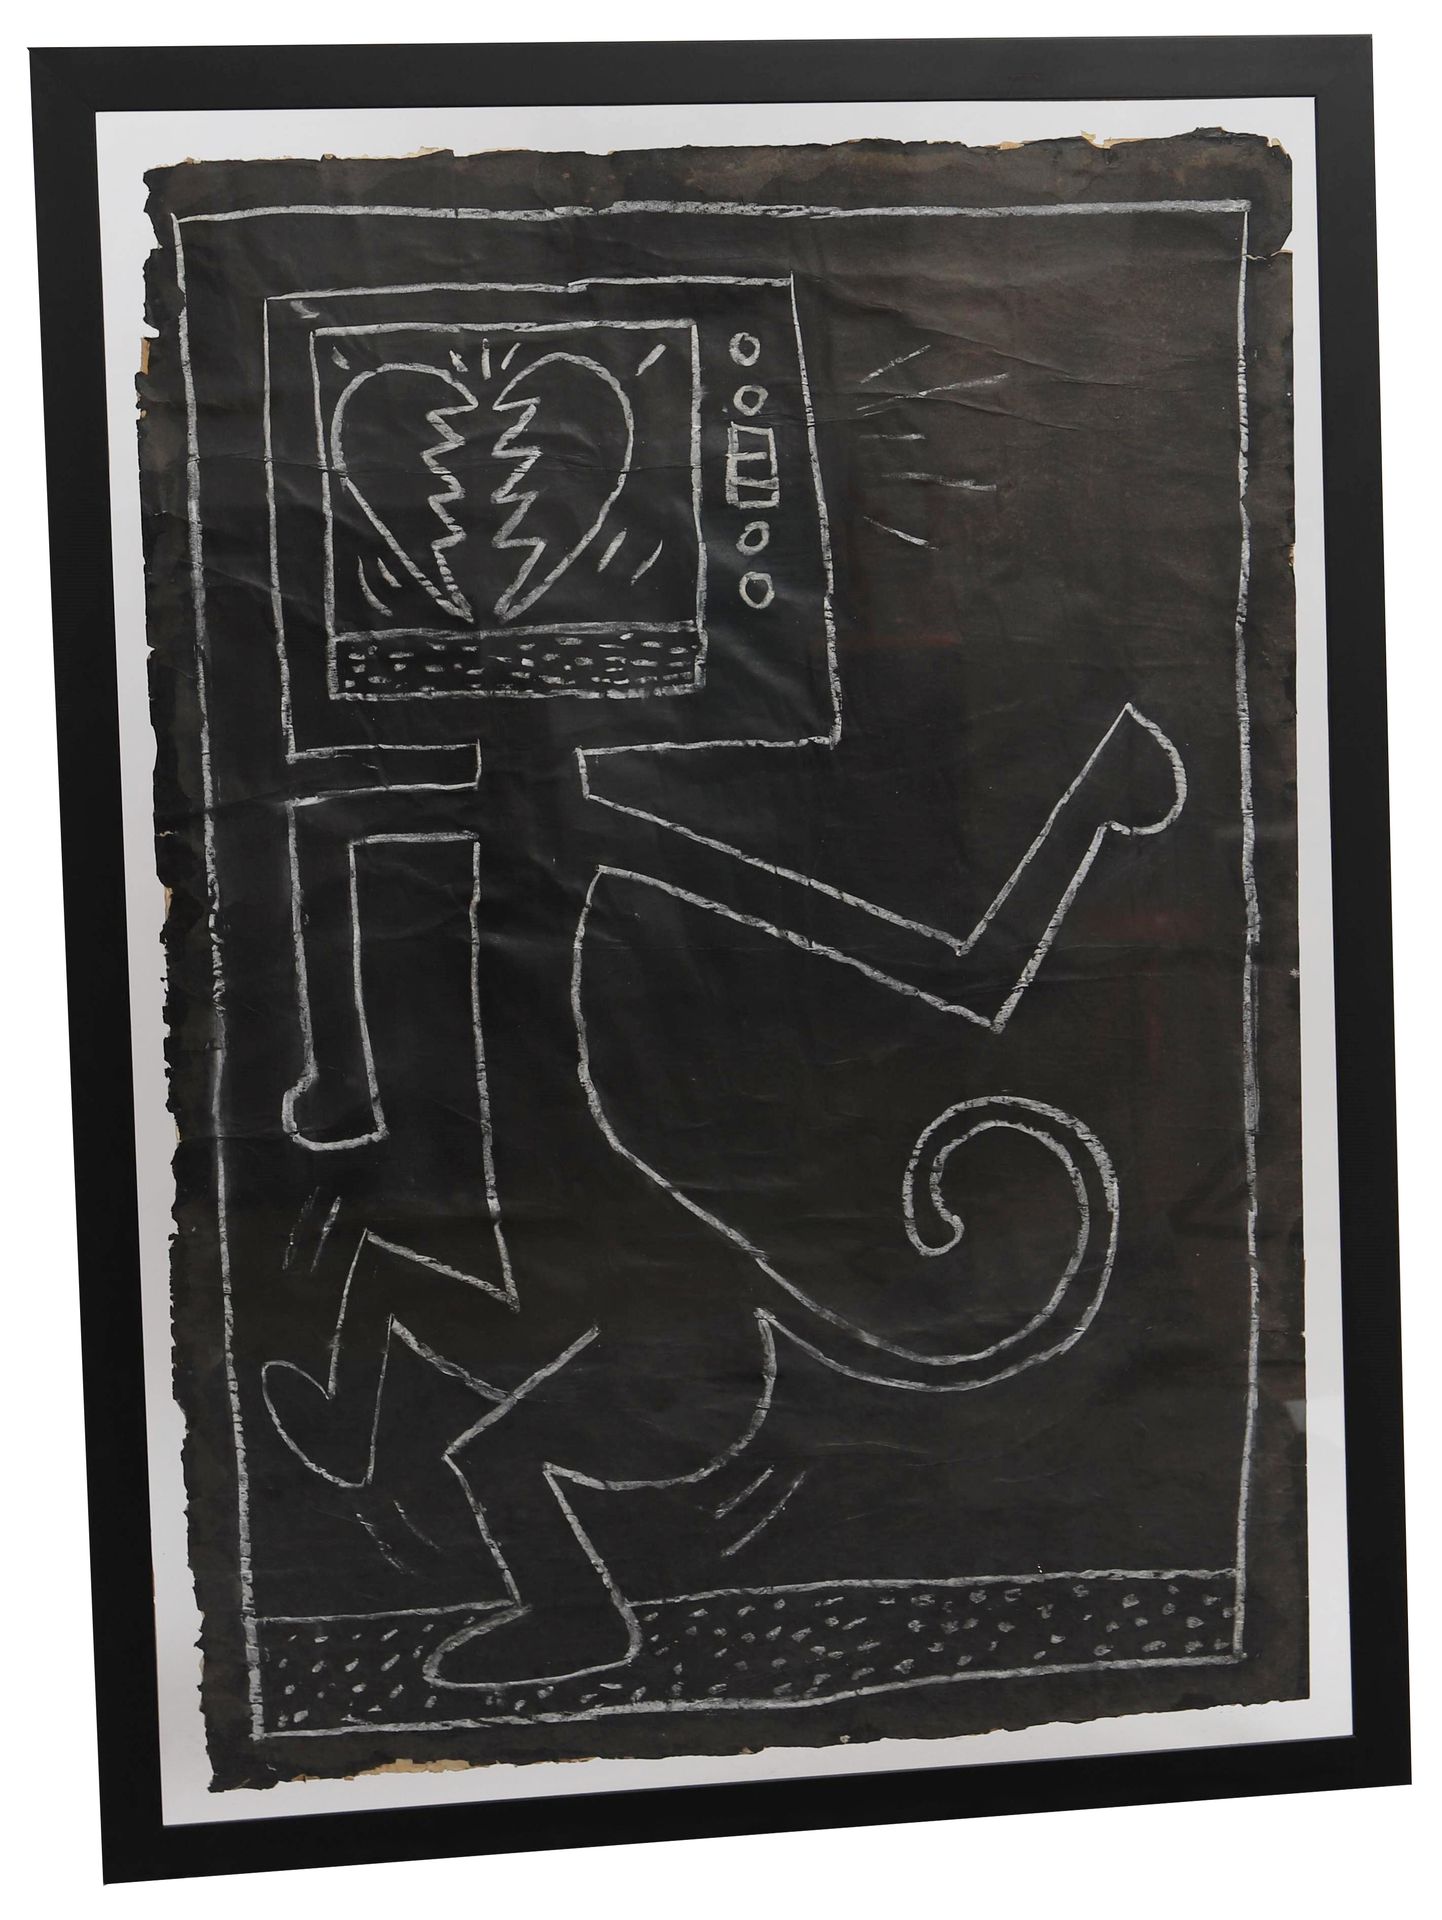 Null 地铁画 - Keith Haring (1958-1990) - Attr.

在一张地下海报上绘制的原始粉笔画。

玻璃下的框架

20世纪时期

&hellip;